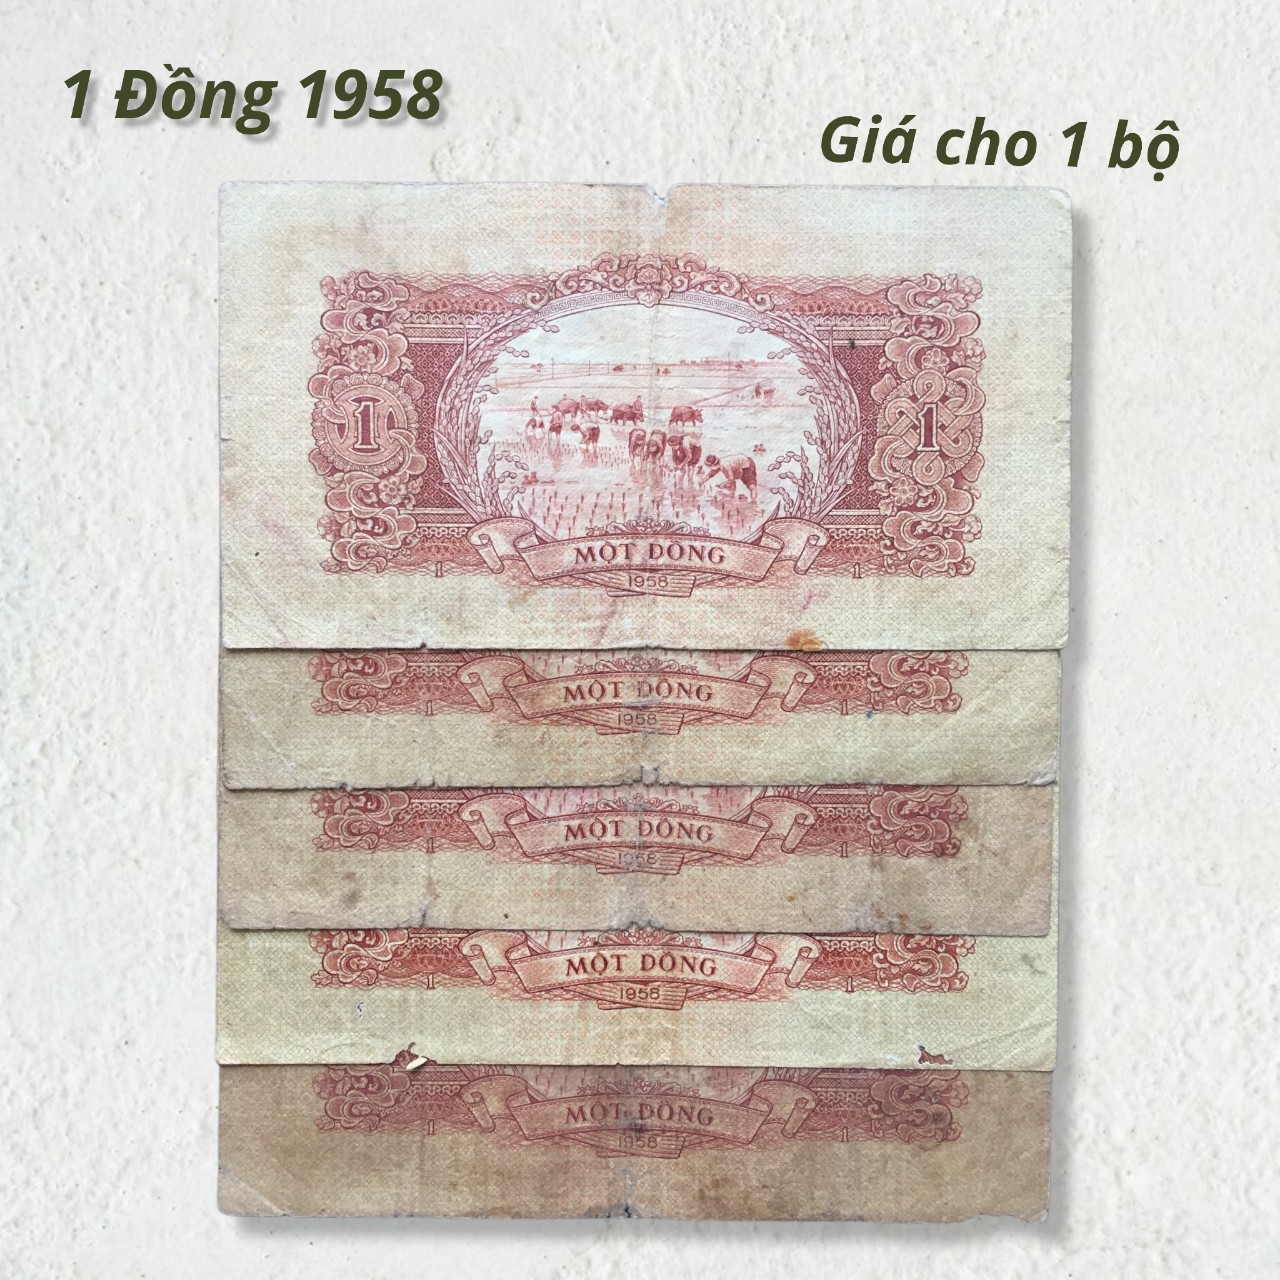 Tiền xưa Việt Nam 1 đồng 1958 hình Cột Cờ Hà Nội chất lượng cũ như hình